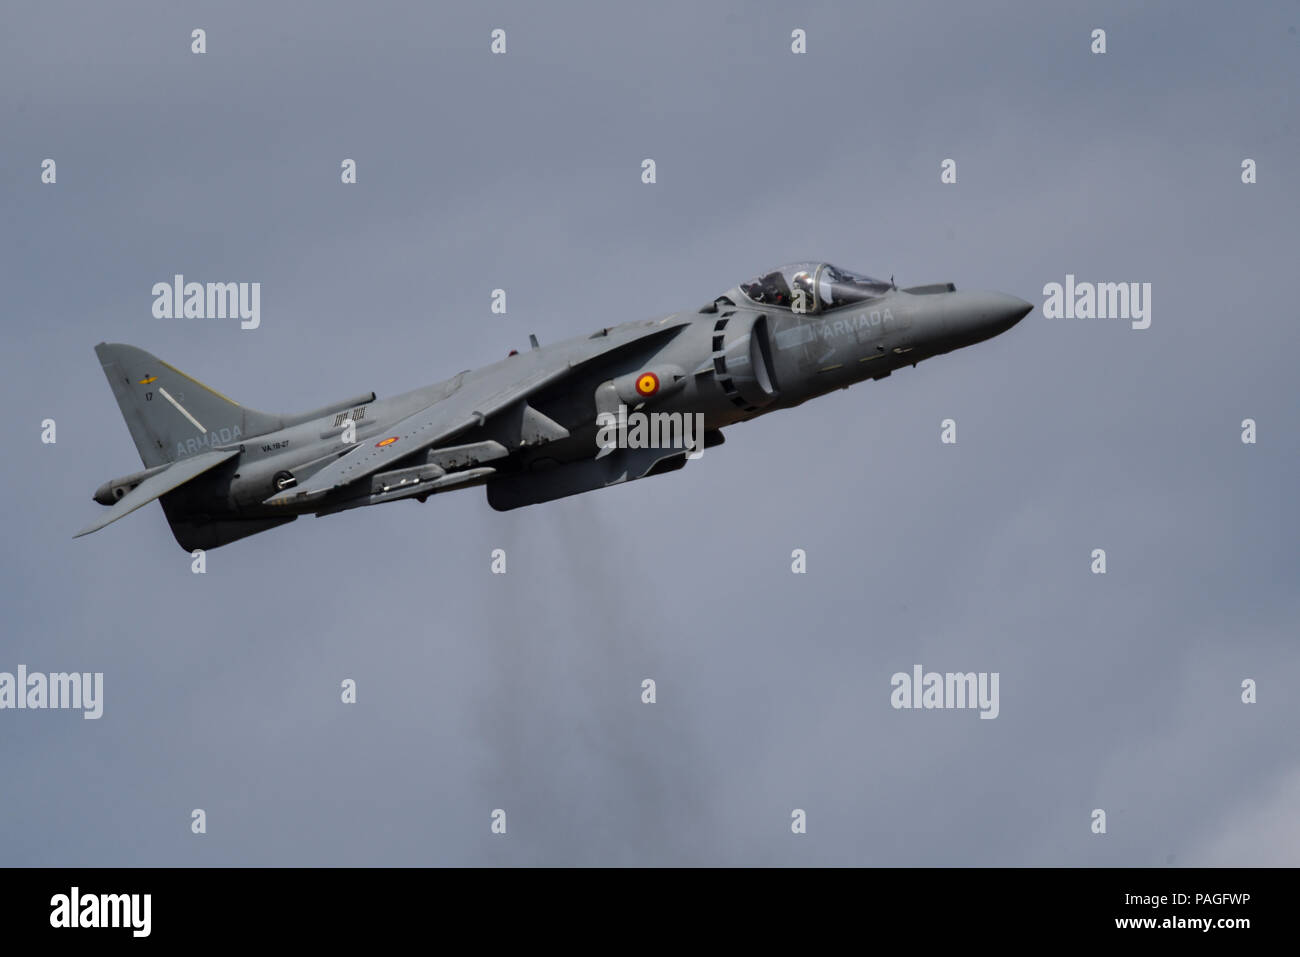 Marina spagnola McDonnell Douglas AV-8B Harrier II Matador jump jet da combattimento aereo la visualizzazione a Farnborough Airshow internazionale, FIA 2018. V/STOL. Armada Española VA-2 Matador II Foto Stock